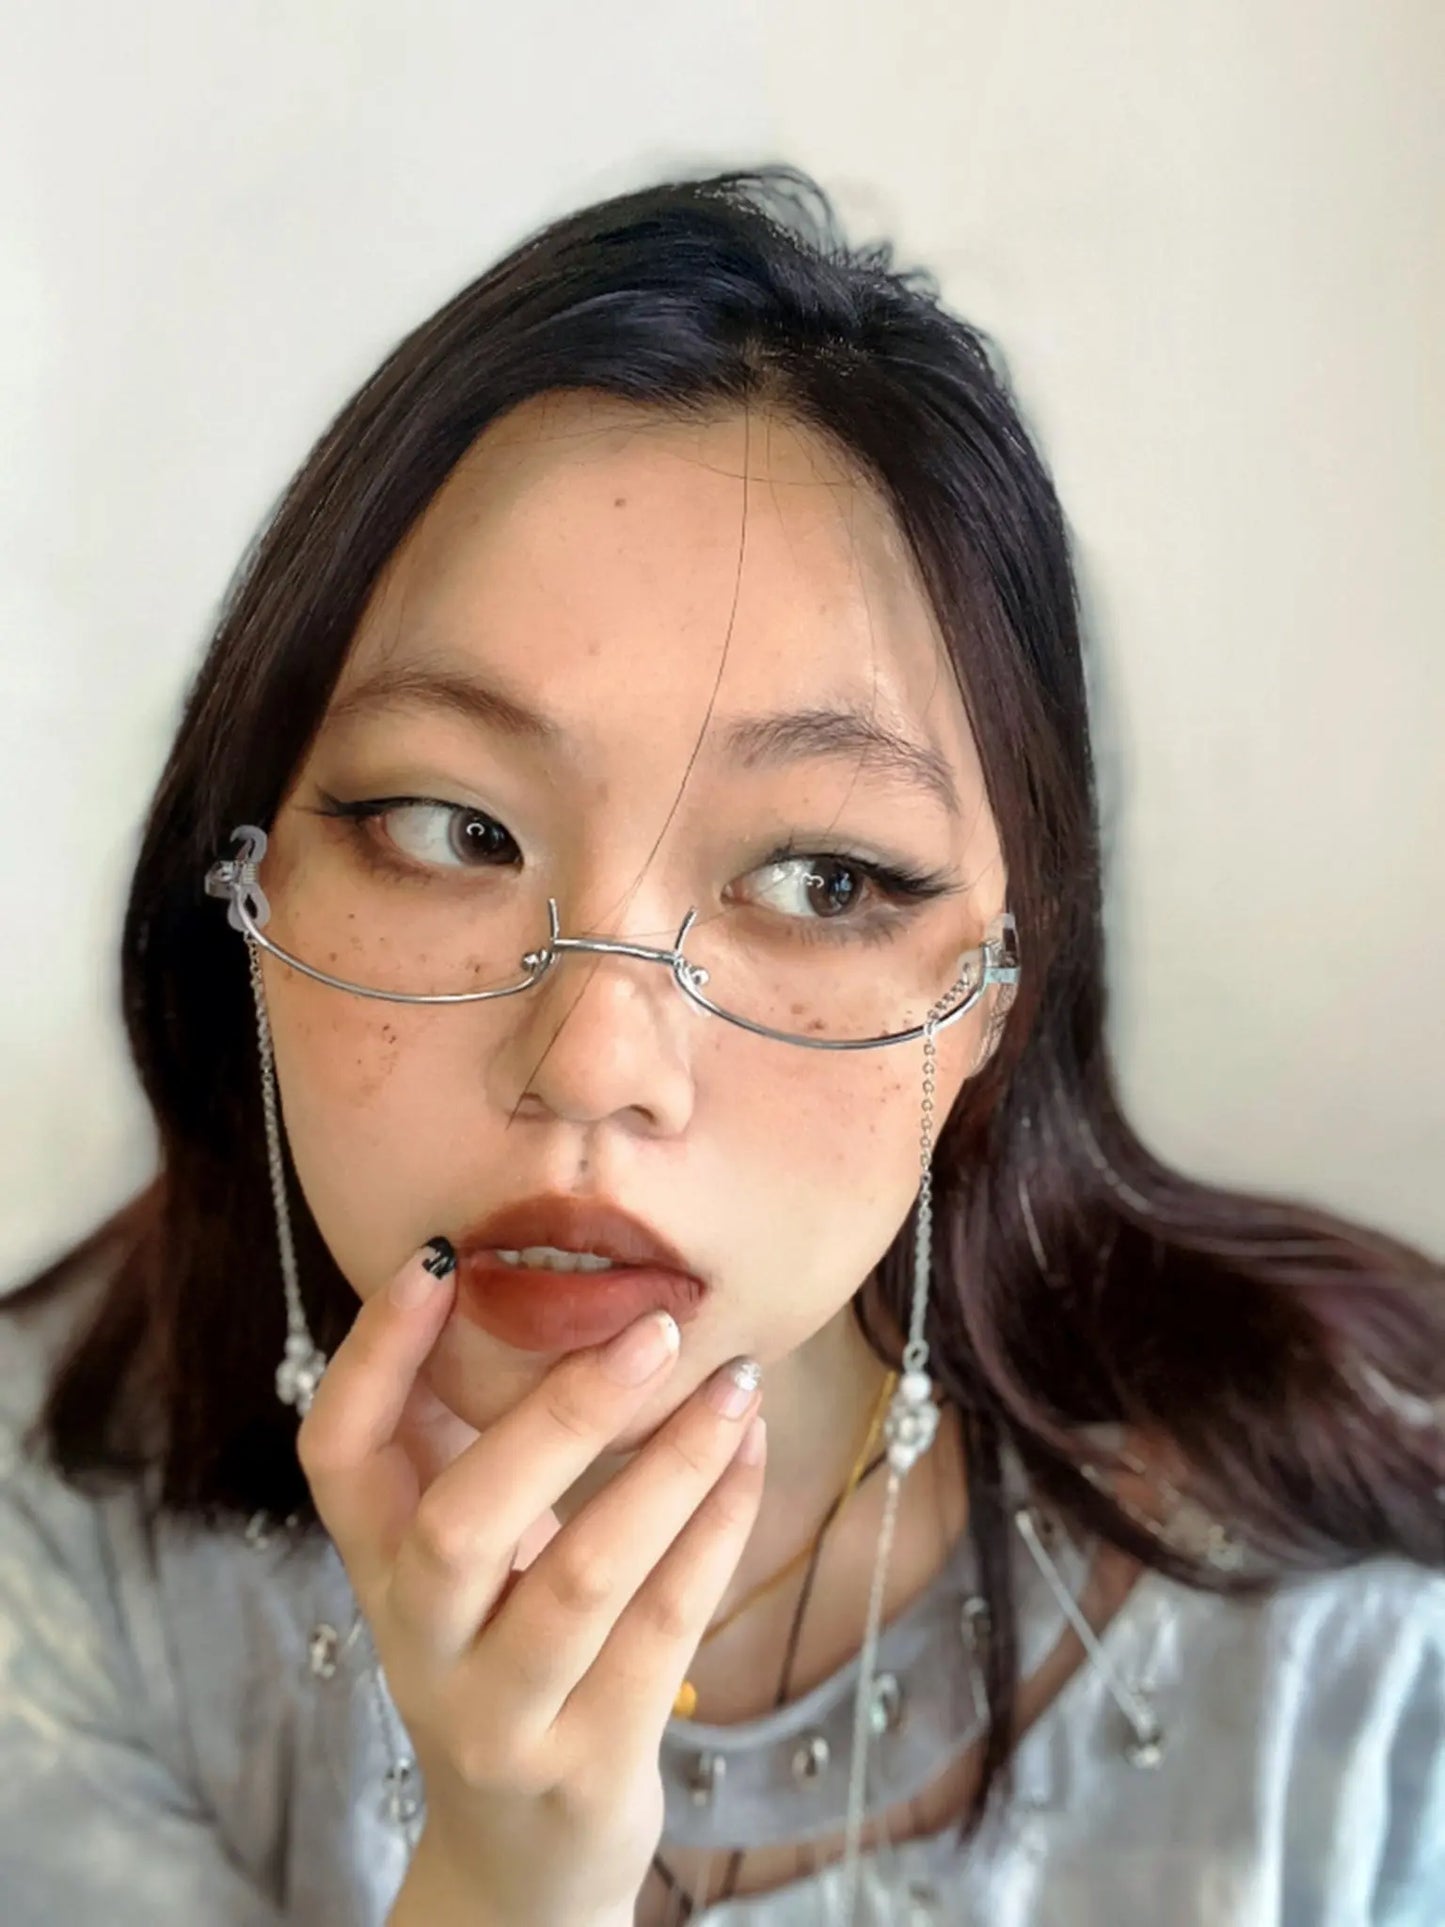 'Chandelier' Anime Girl Half Frame Glasses AlielNosirrah